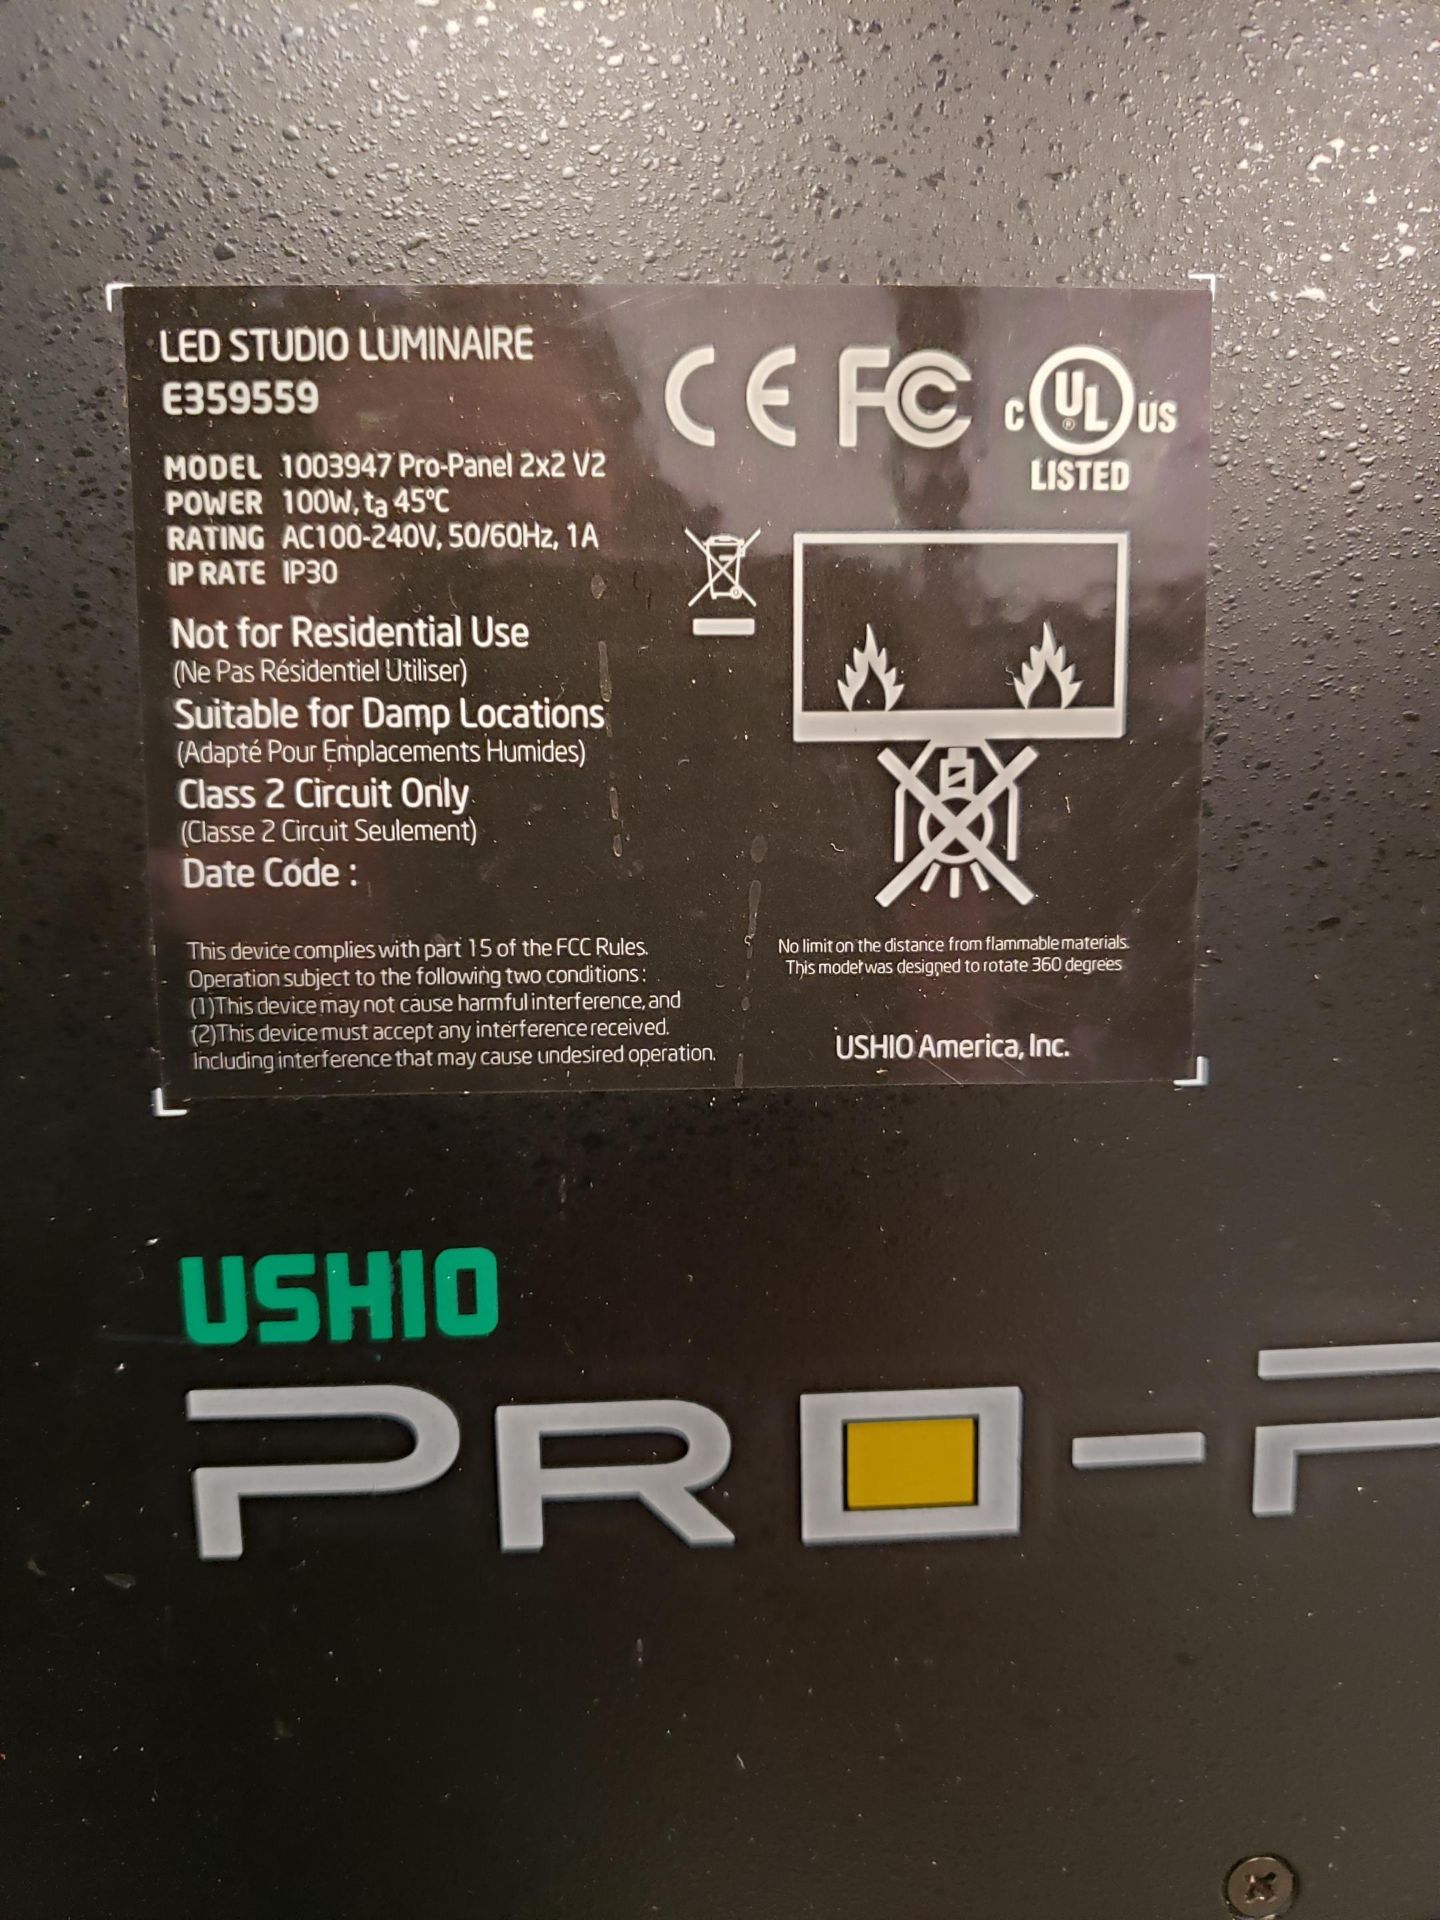 Ushio Model 1003947 Pro-Panel 2X2 V2 LED Studio Luminaira - Image 2 of 2